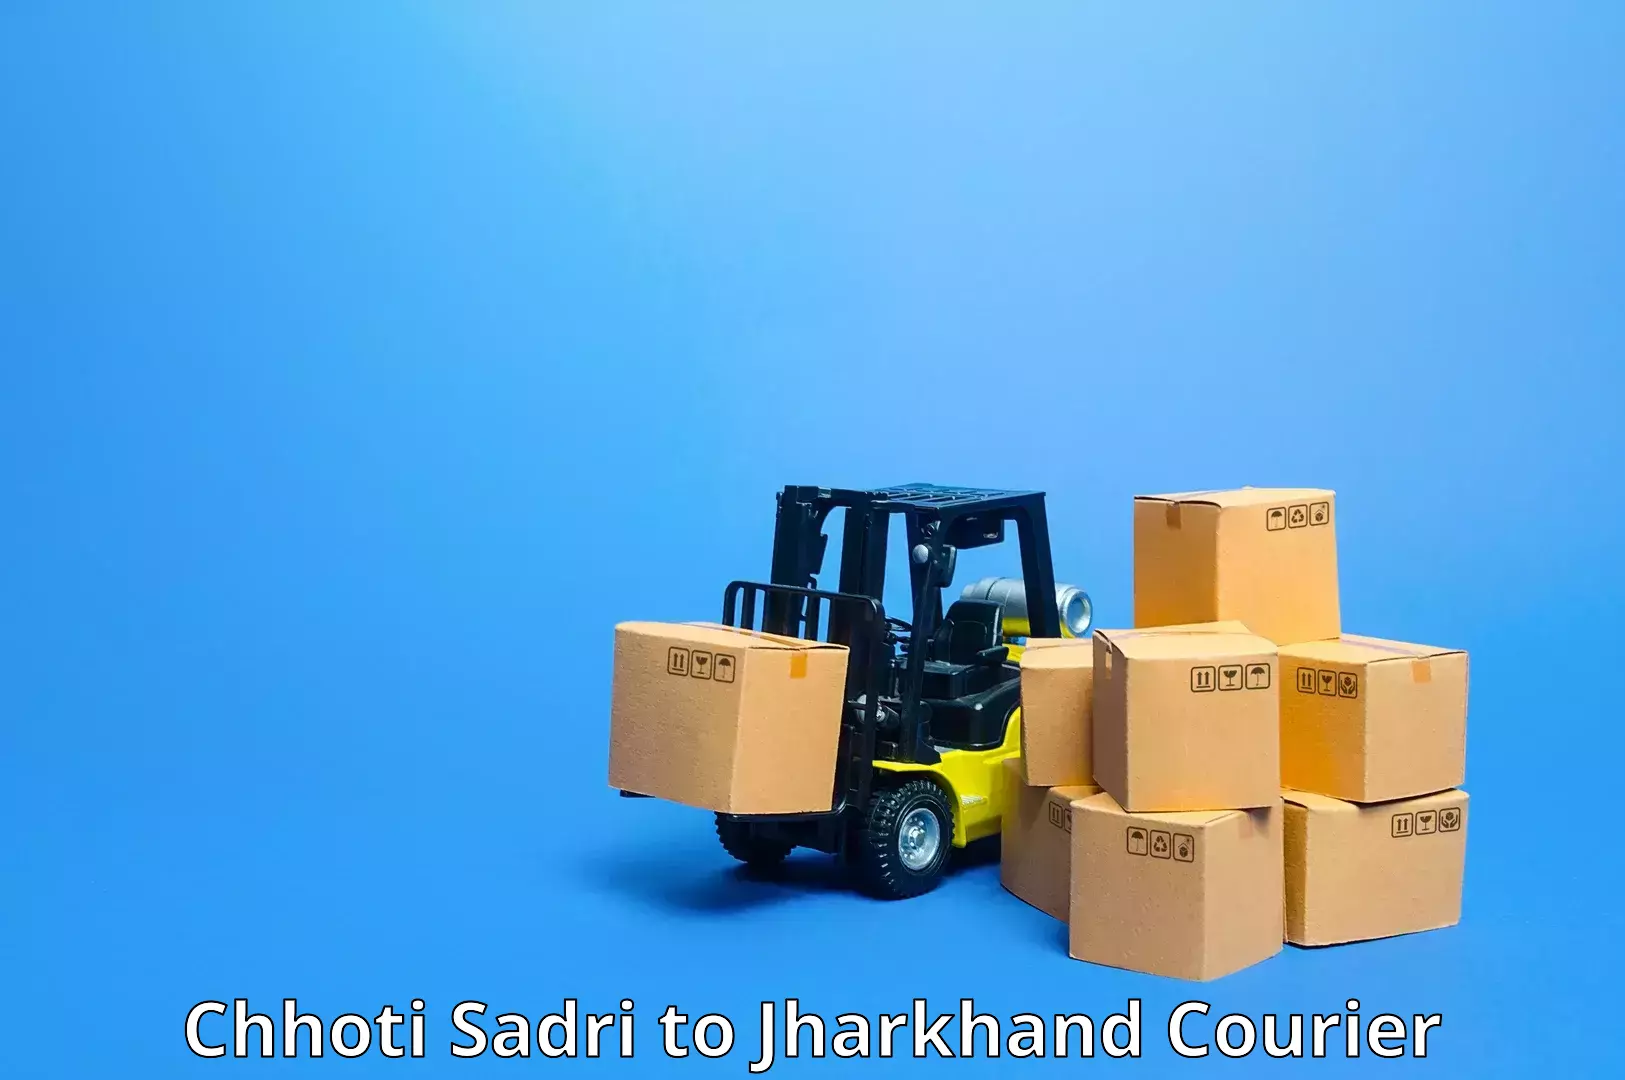 International courier rates Chhoti Sadri to Jamshedpur